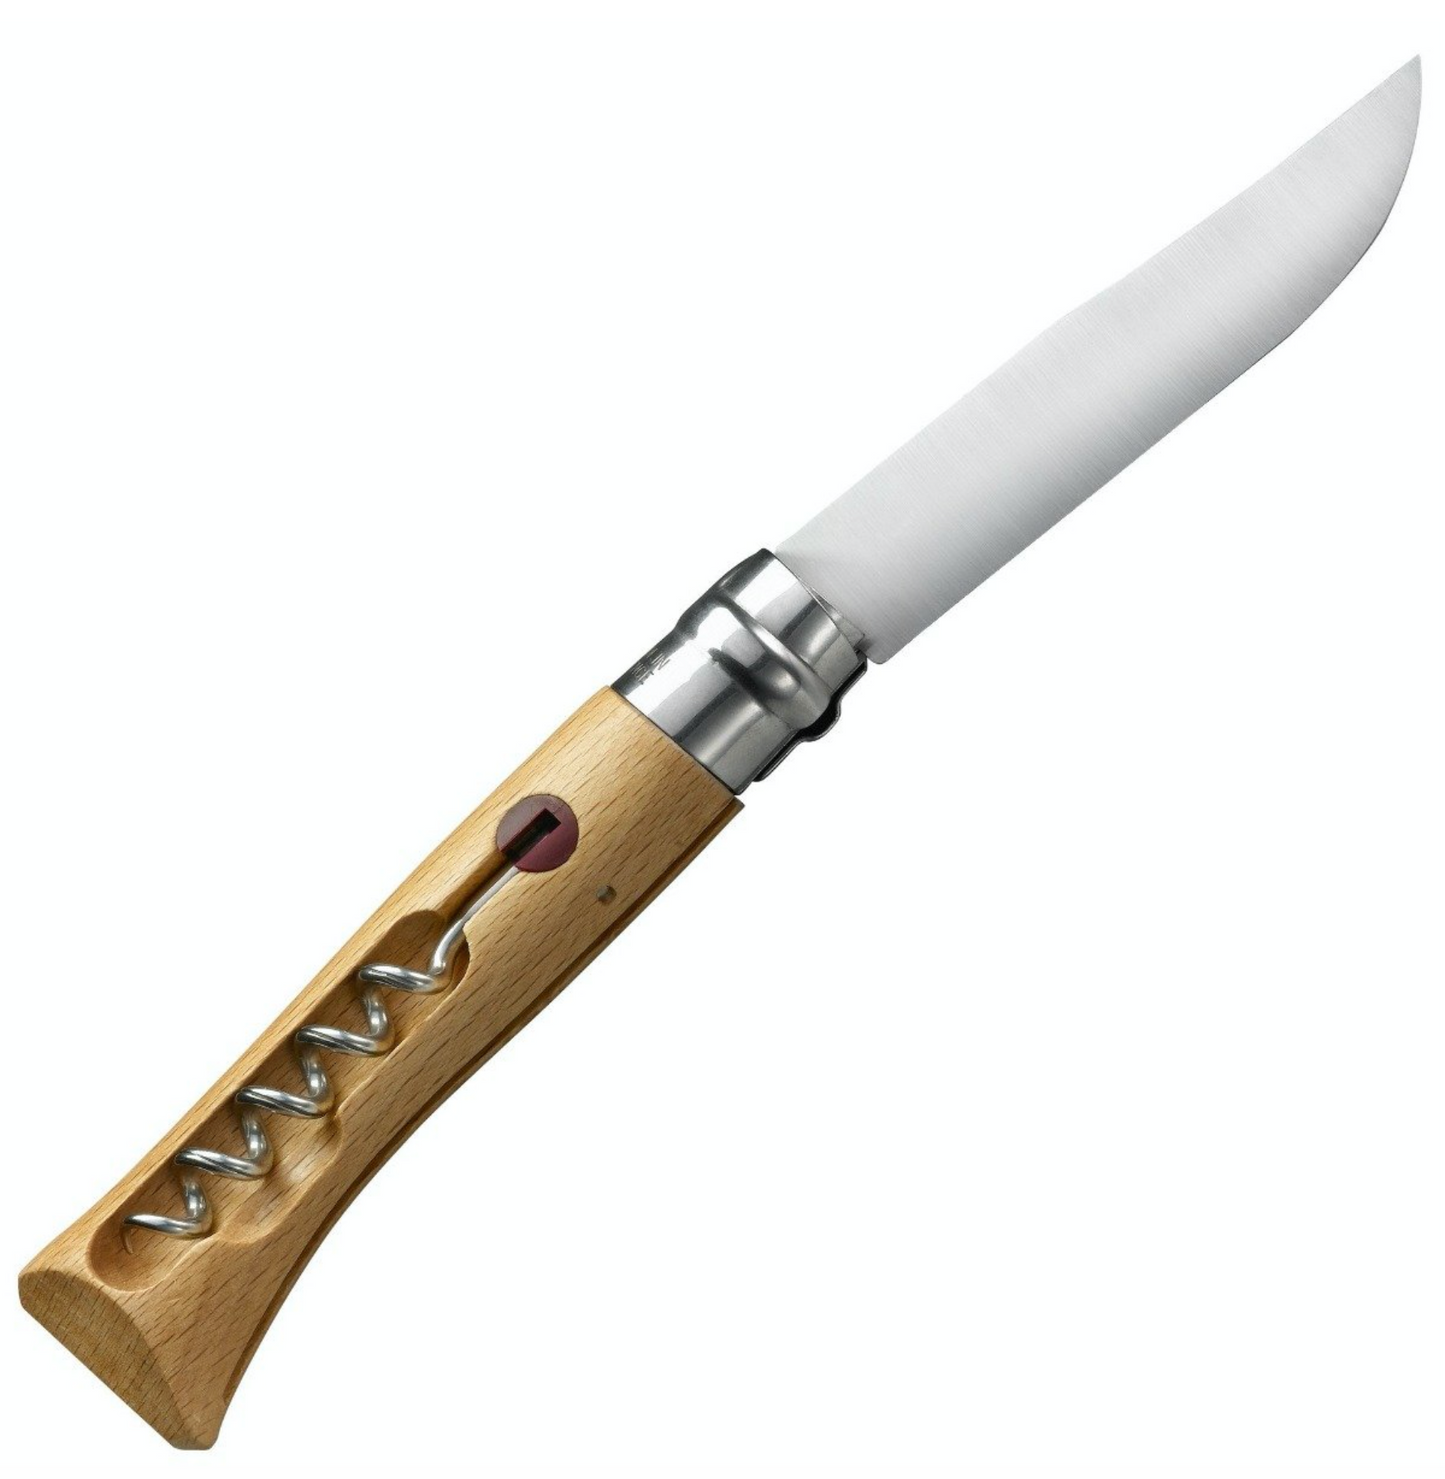 No. 10 Corkscrew Blade